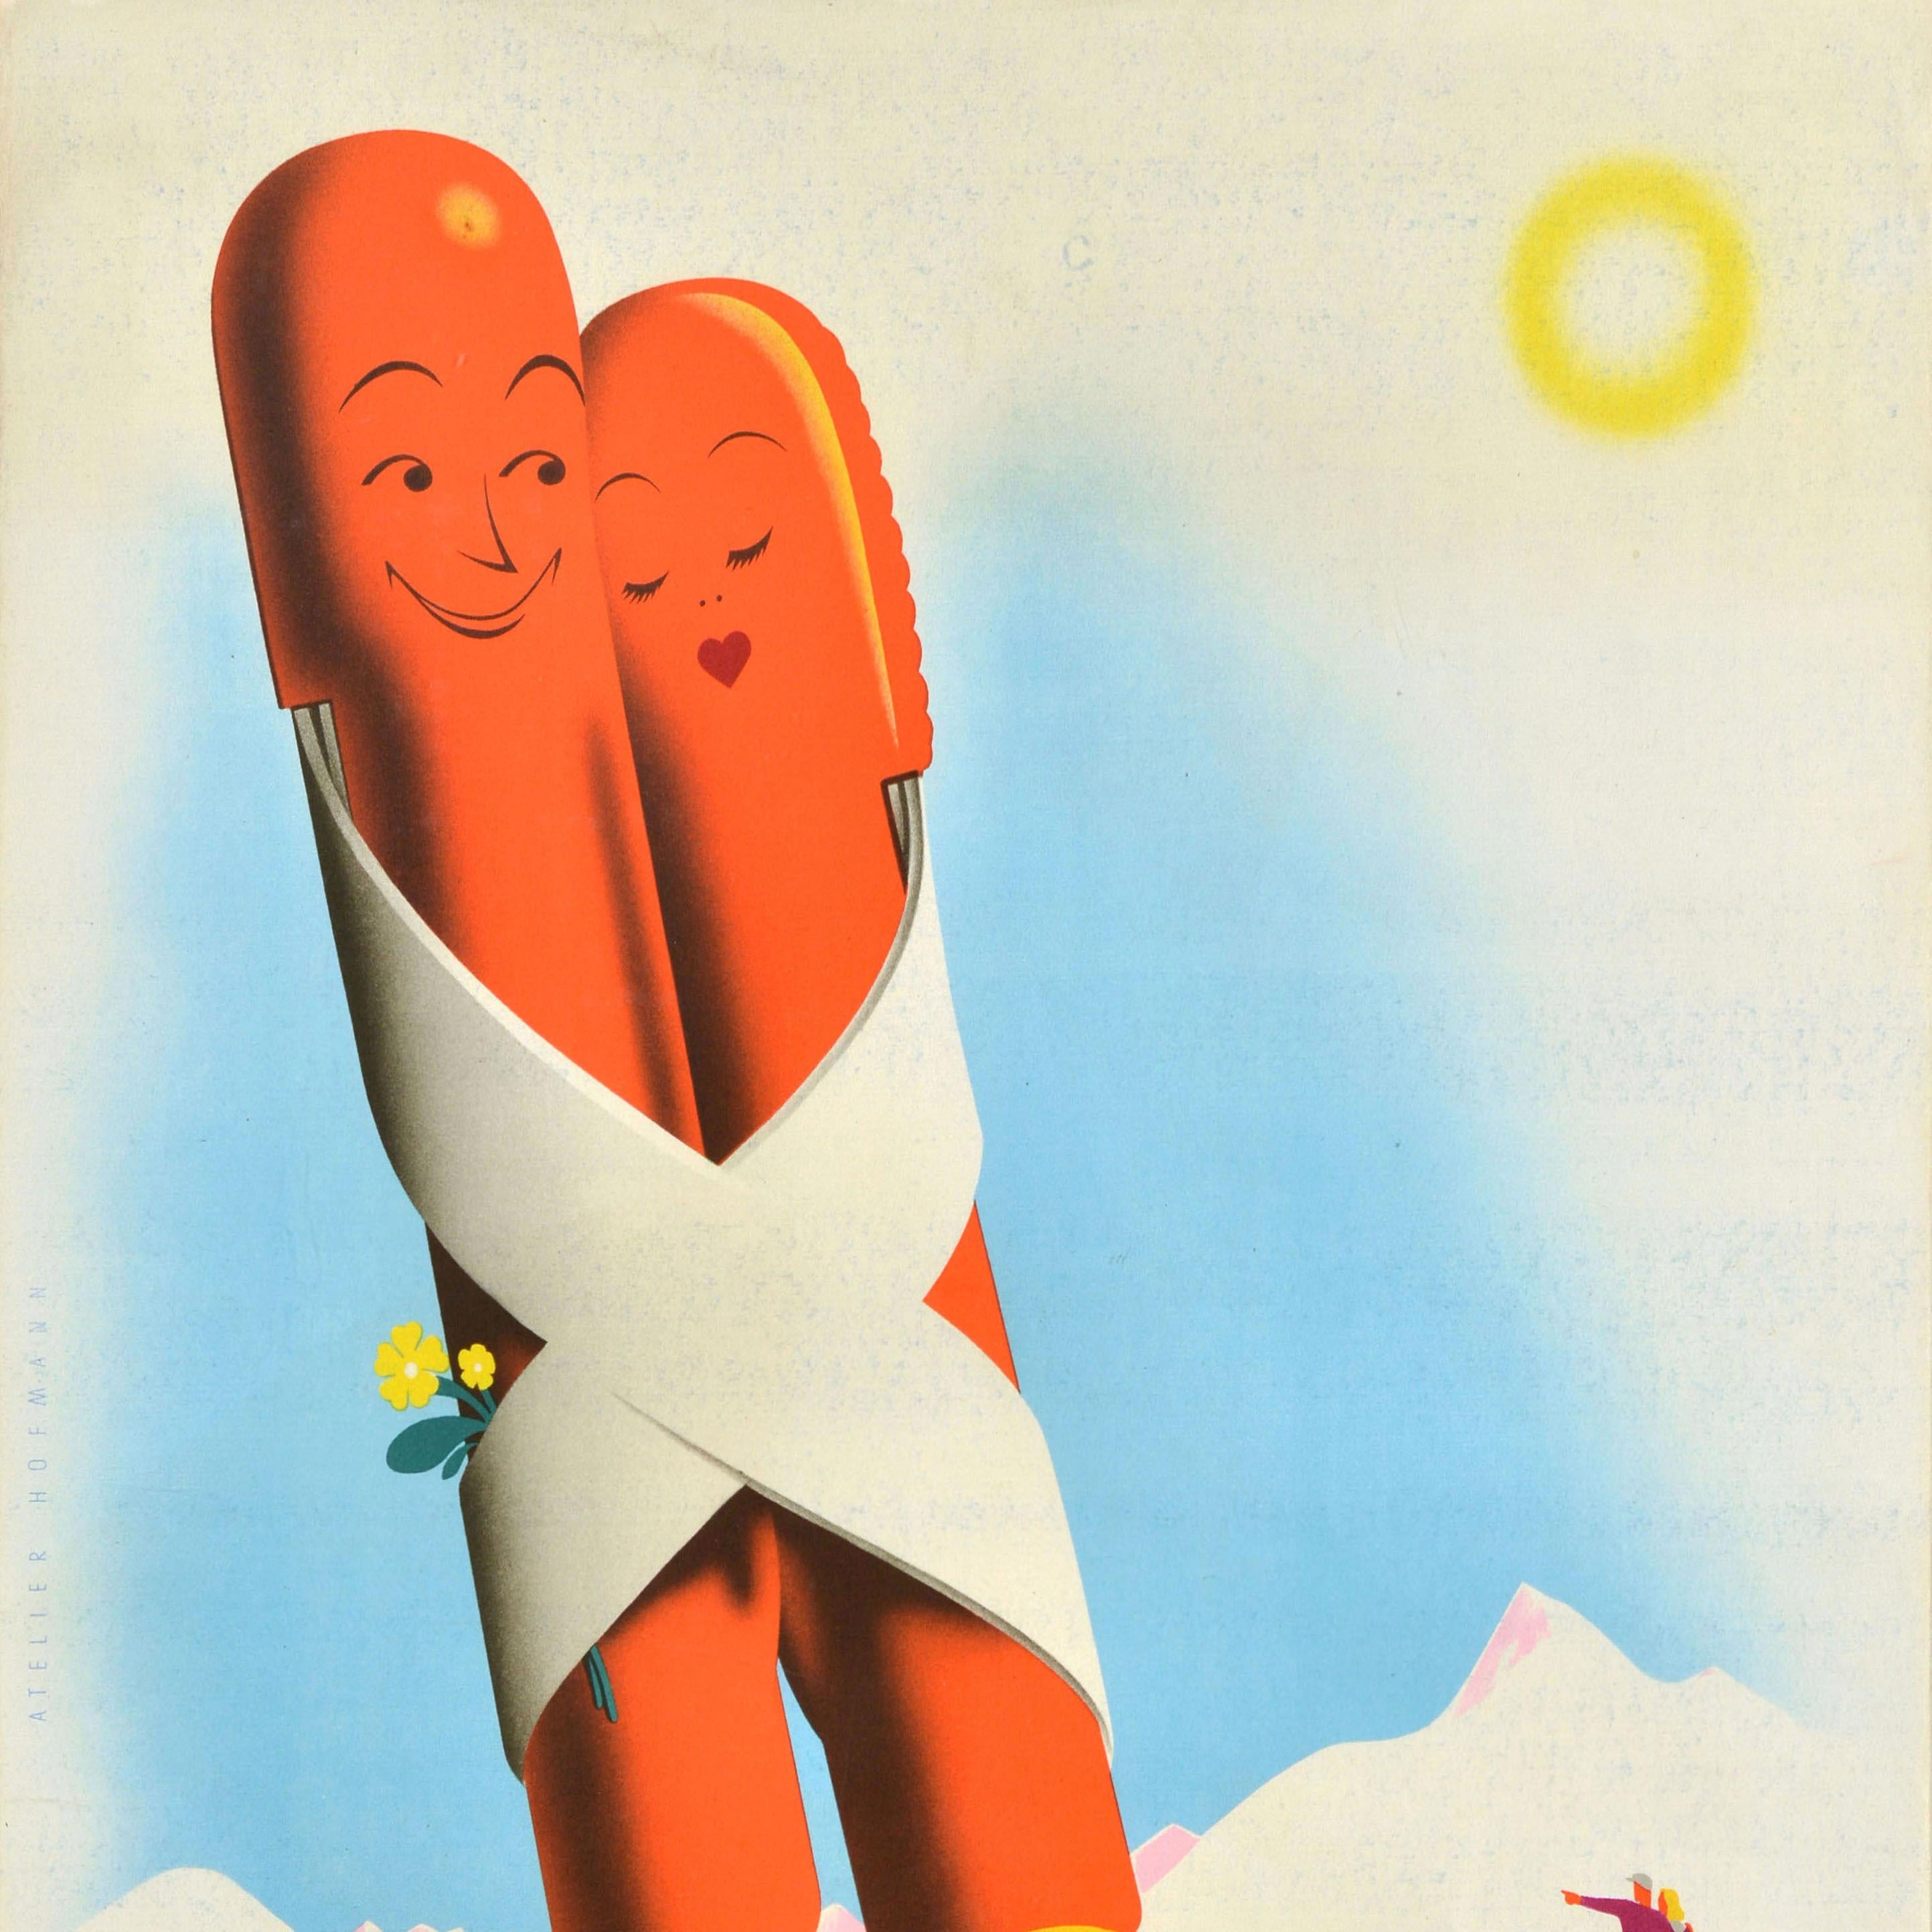 Original Vintage Wintersport- und Skireiseplakat für Österreich. Großartiges Design, das ein lustiges und romantisches Bild eines Paares von Skistöcken zeigt, die sich aneinander lehnen, mit den Gesichtern eines lächelnden Mannes und einer